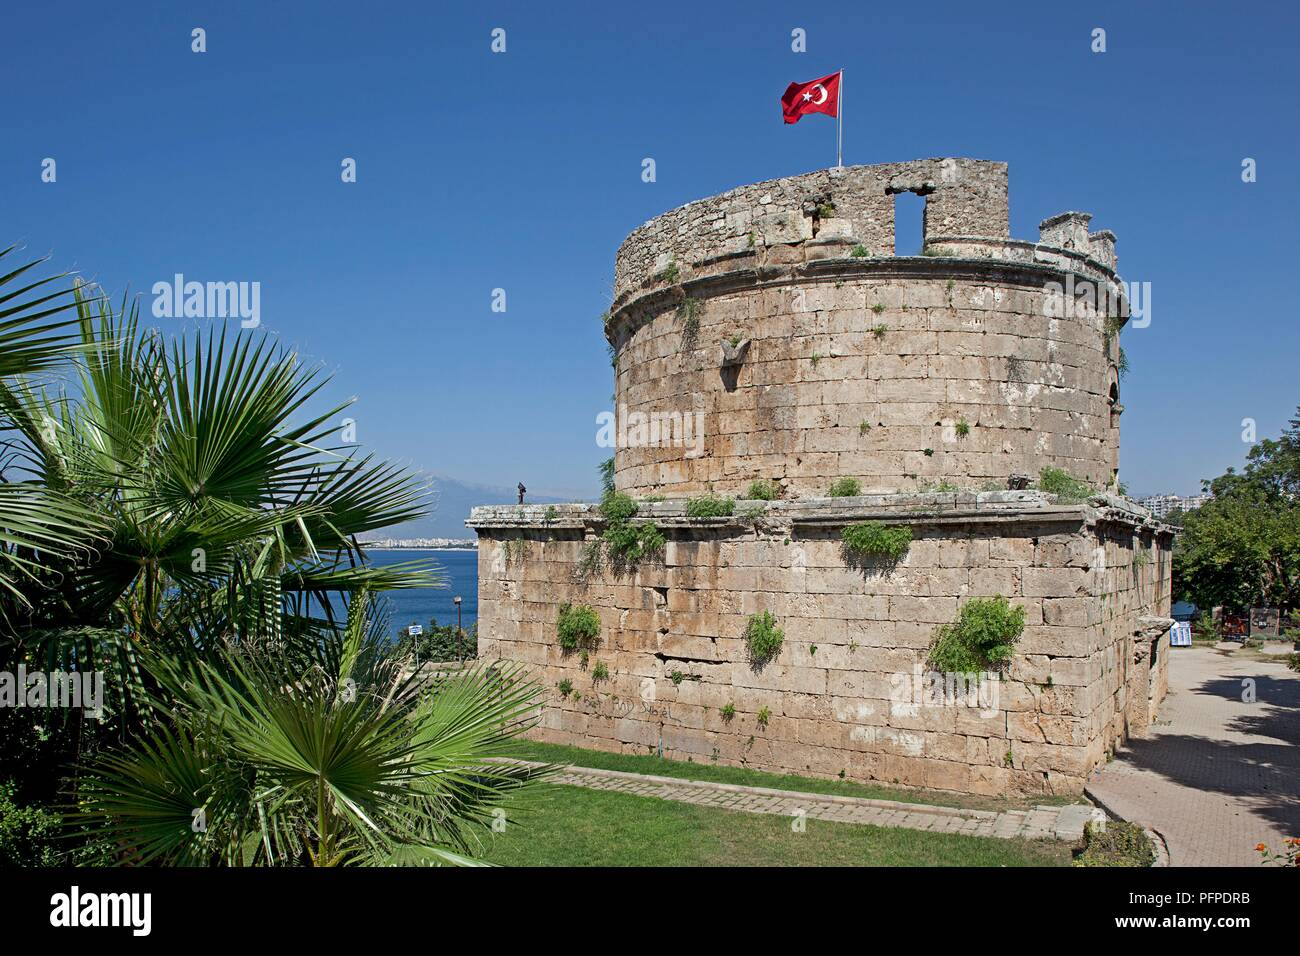 Turkey, Antalya, Kaleici, 2nd century circular Hidirlik Tower overlooking sea Stock Photo